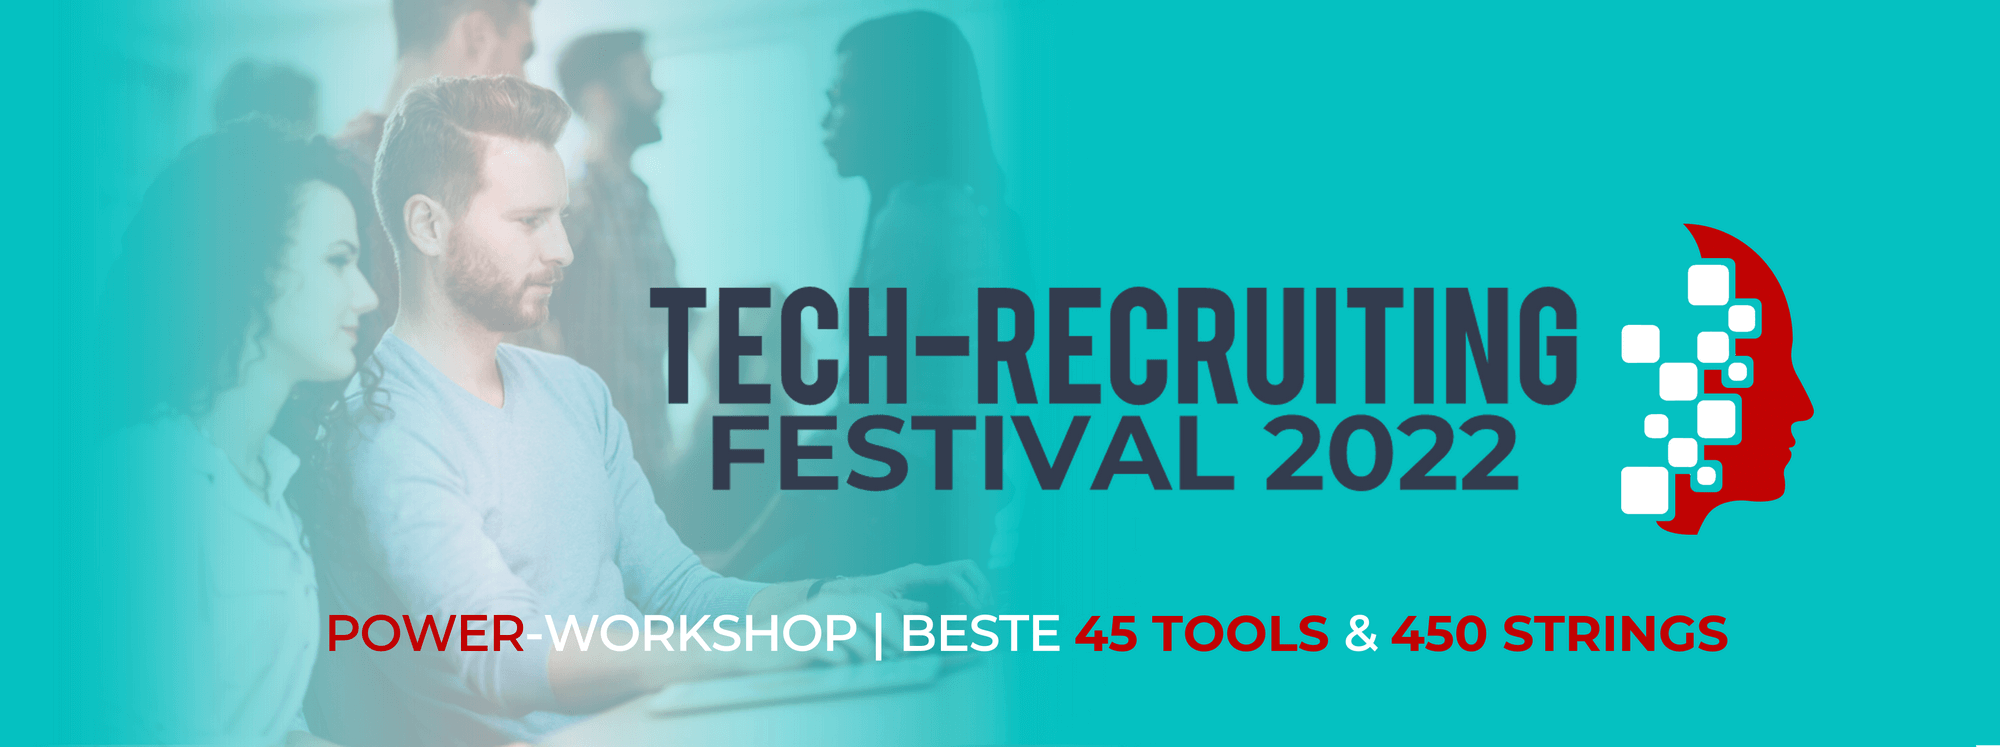 Tech-Rec-Festival 2022 - Kurs-HEADER 1